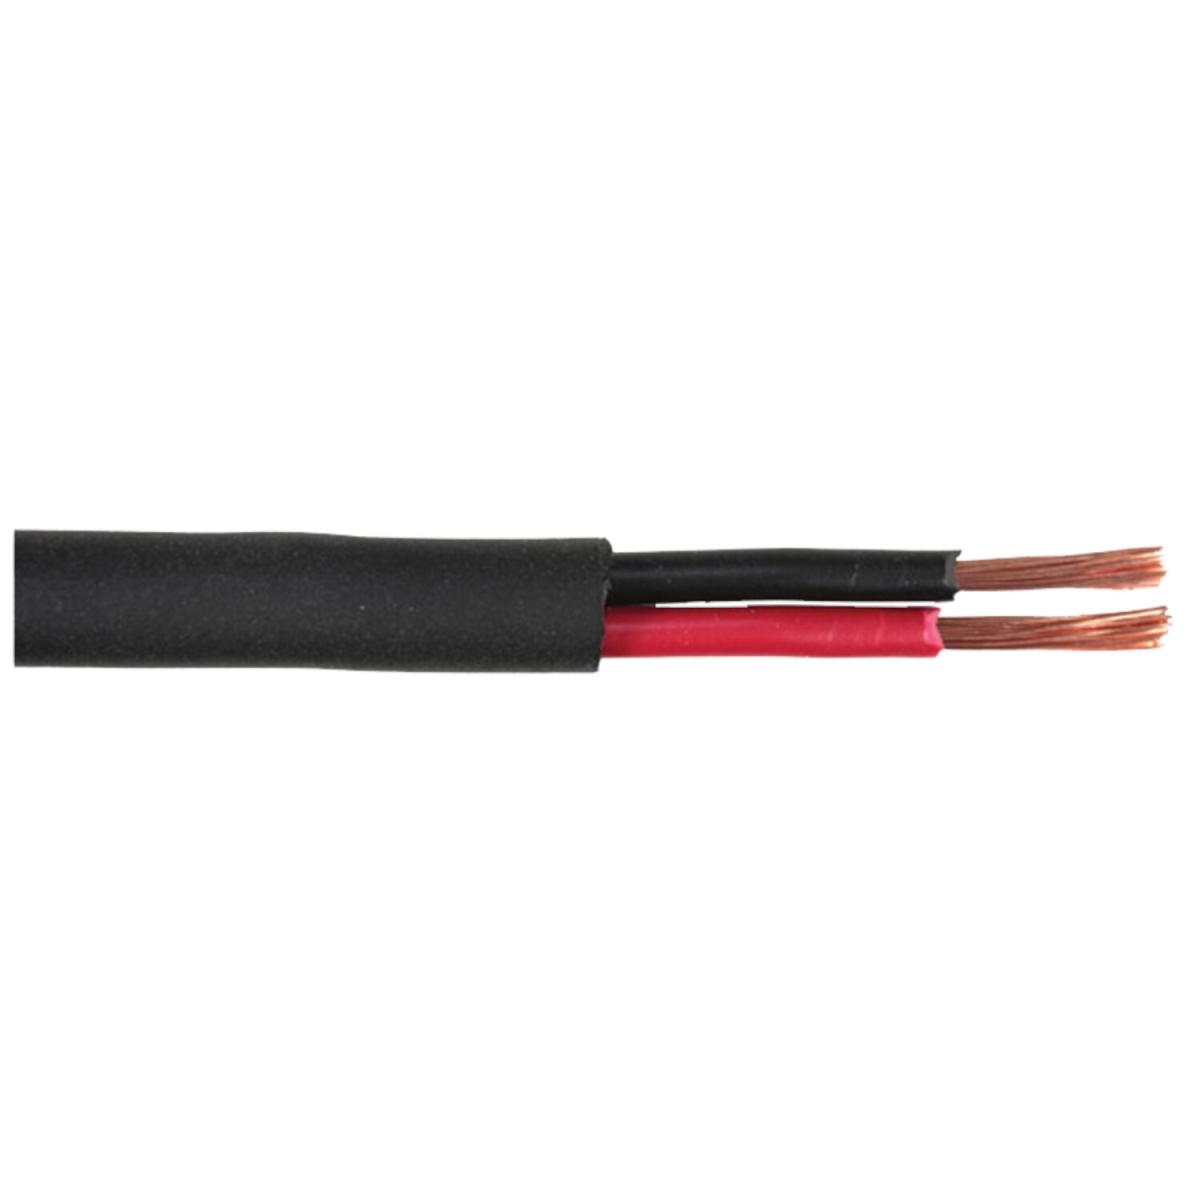 Cable haut-parleur gaine : 5mm 2 x 2.5mm2 l= 1m